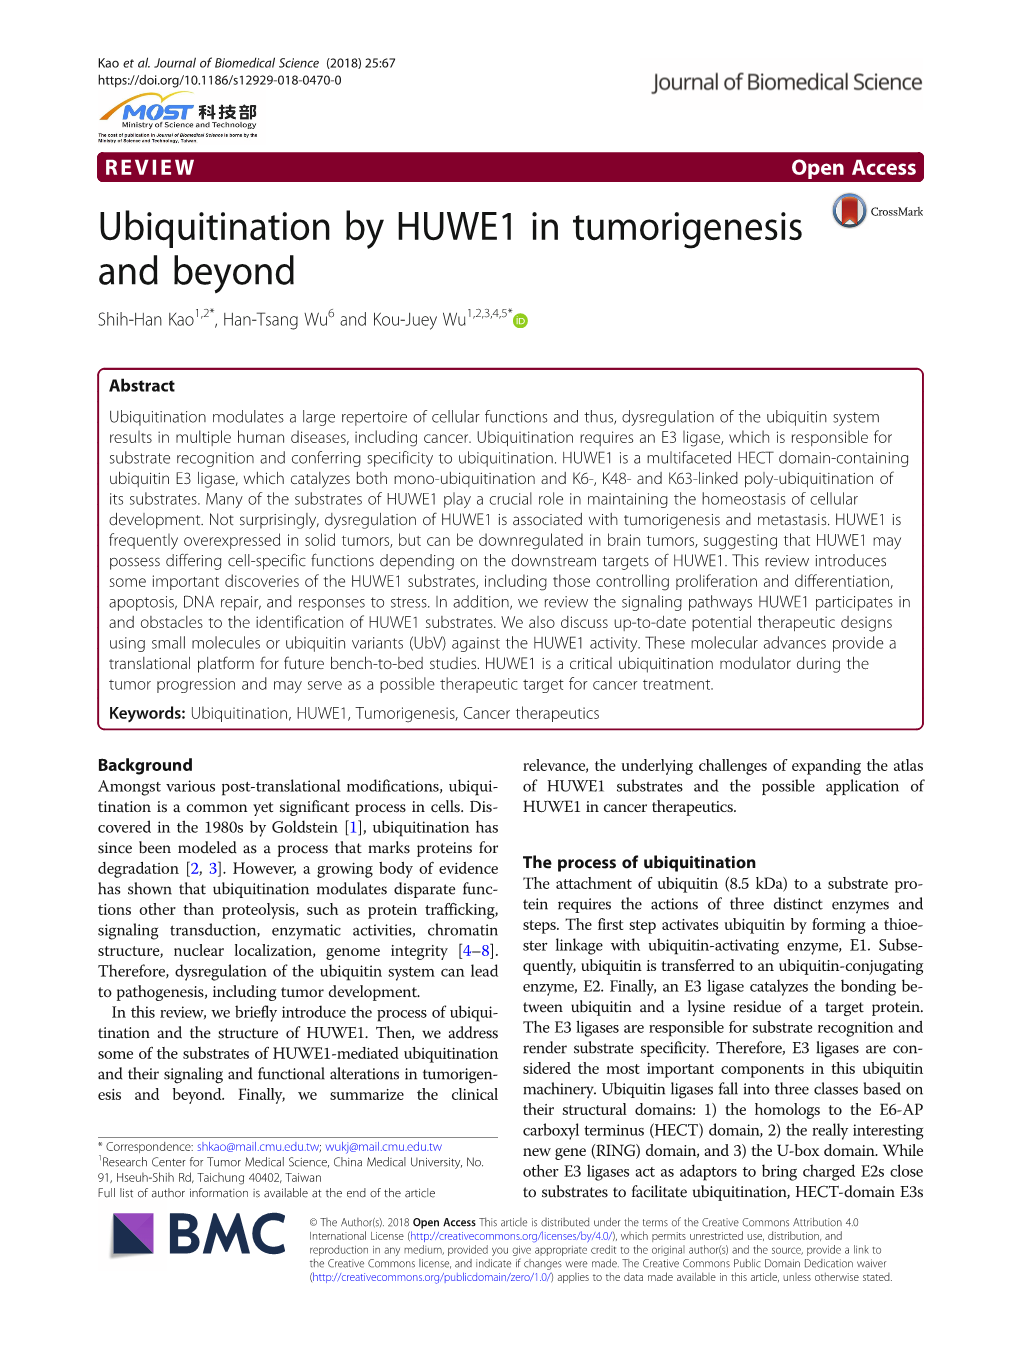 Ubiquitination by HUWE1 in Tumorigenesis and Beyond Shih-Han Kao1,2*, Han-Tsang Wu6 and Kou-Juey Wu1,2,3,4,5*